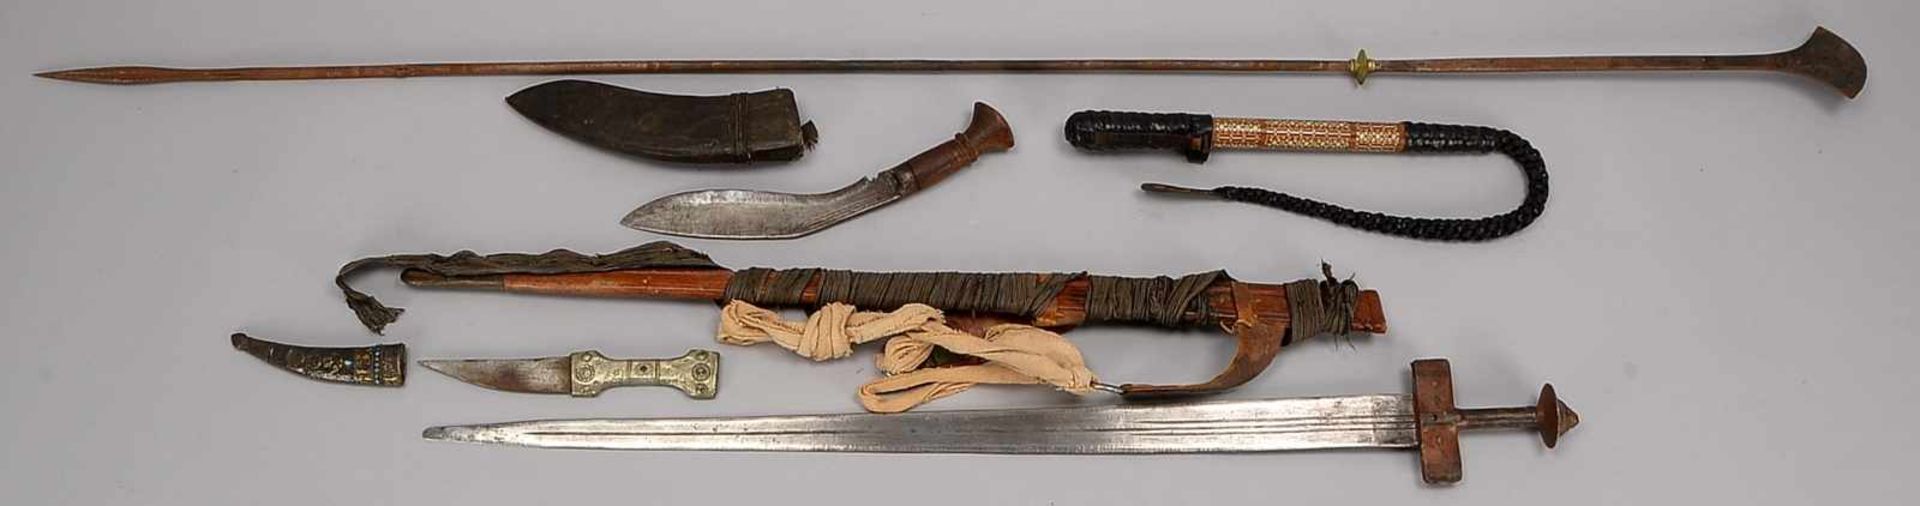 Aus Nordafrika-Sammlung, 5 Teile: 1 Touareg-Schwert in Scheide, 1 Eisenspeer, 1 Peitsche mit